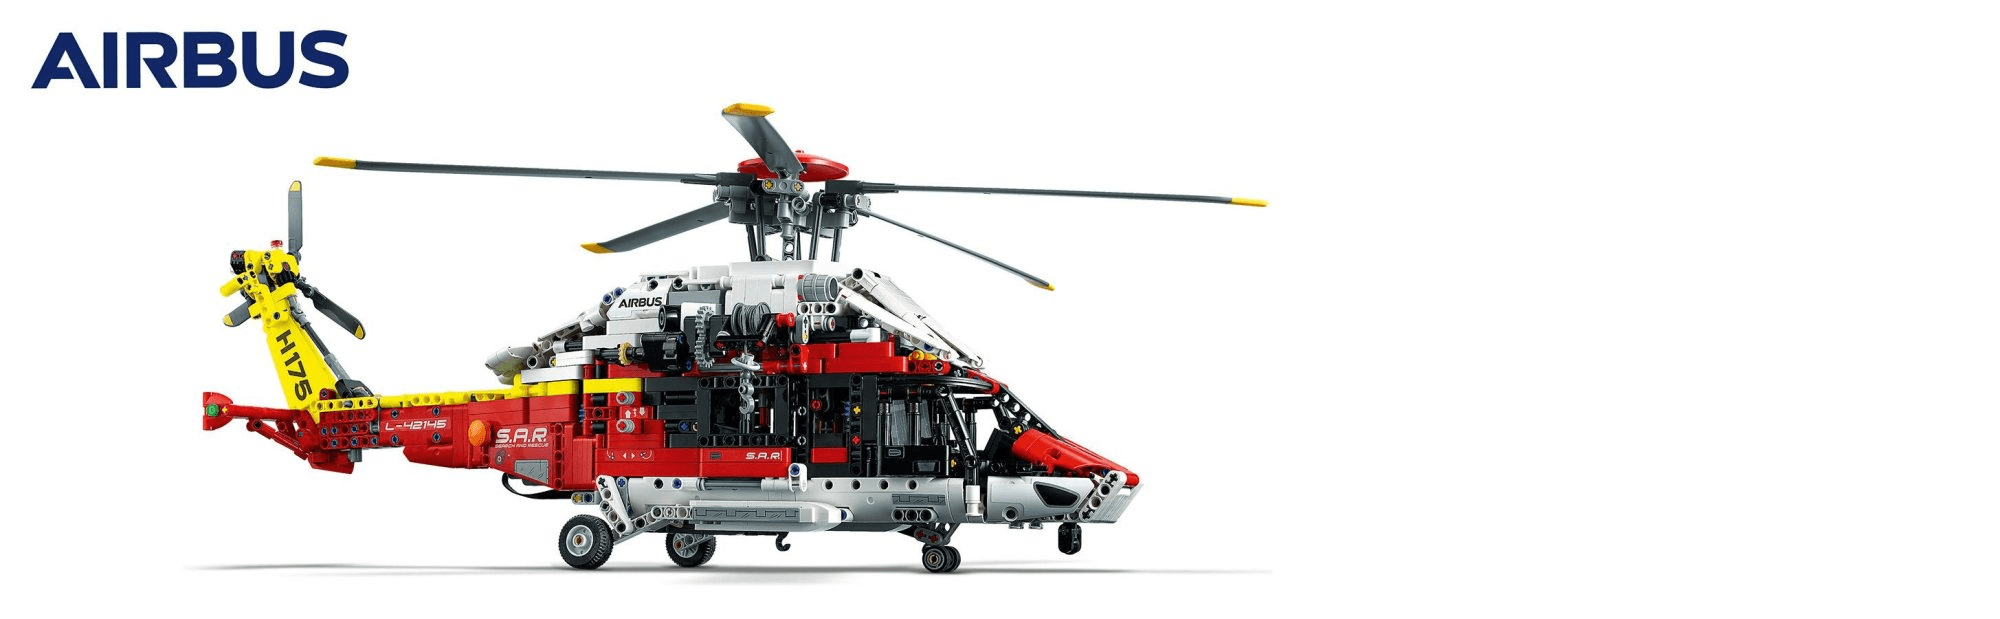 LEGO Technic 42145 Záchranářský vrtulník Airbus H175